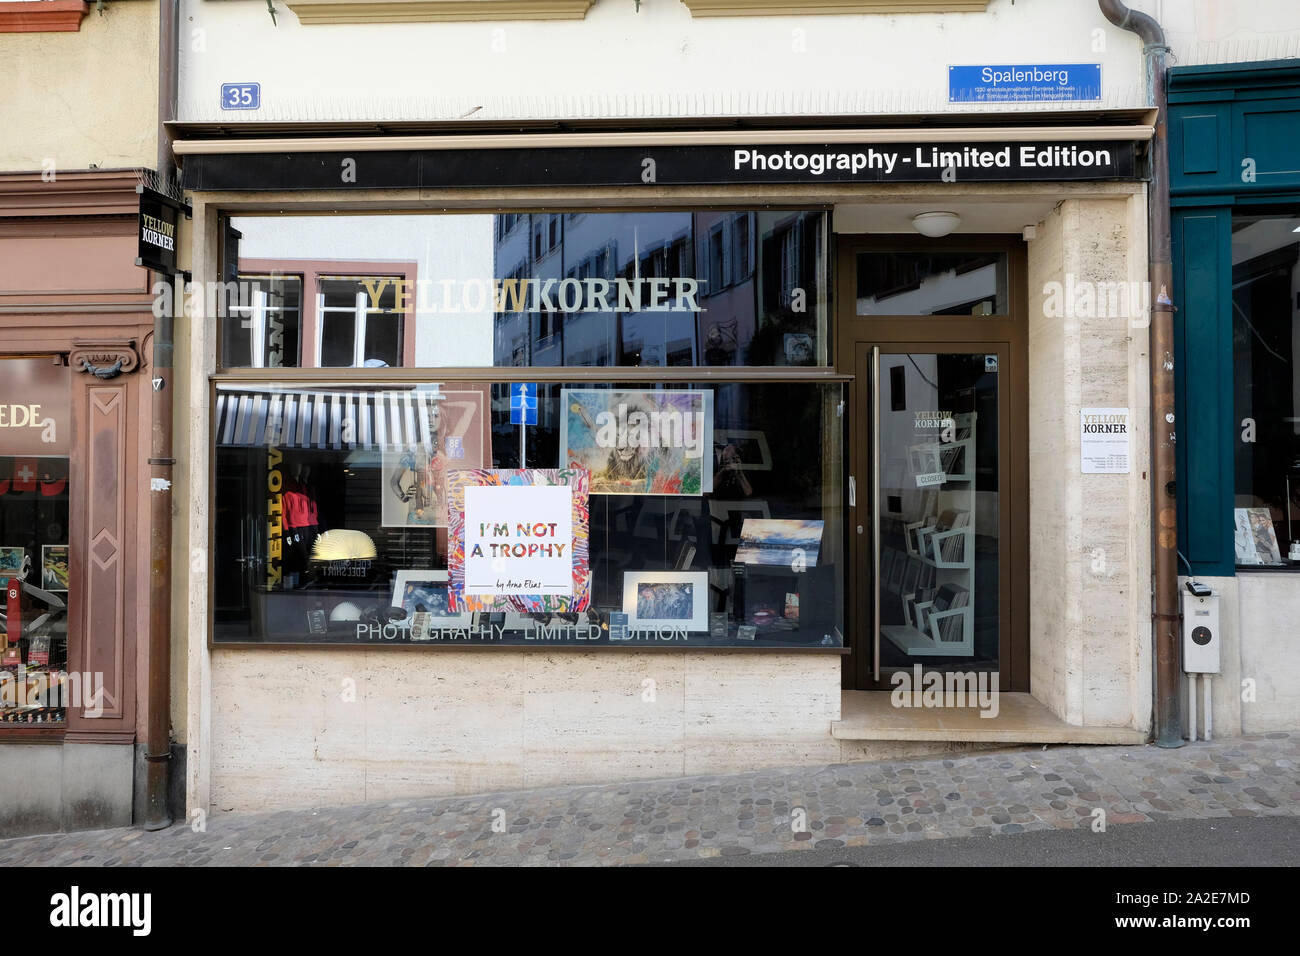 Una vista di giallo korner gallery per foto a edizione limitata, Basilea, Svizzera Foto Stock